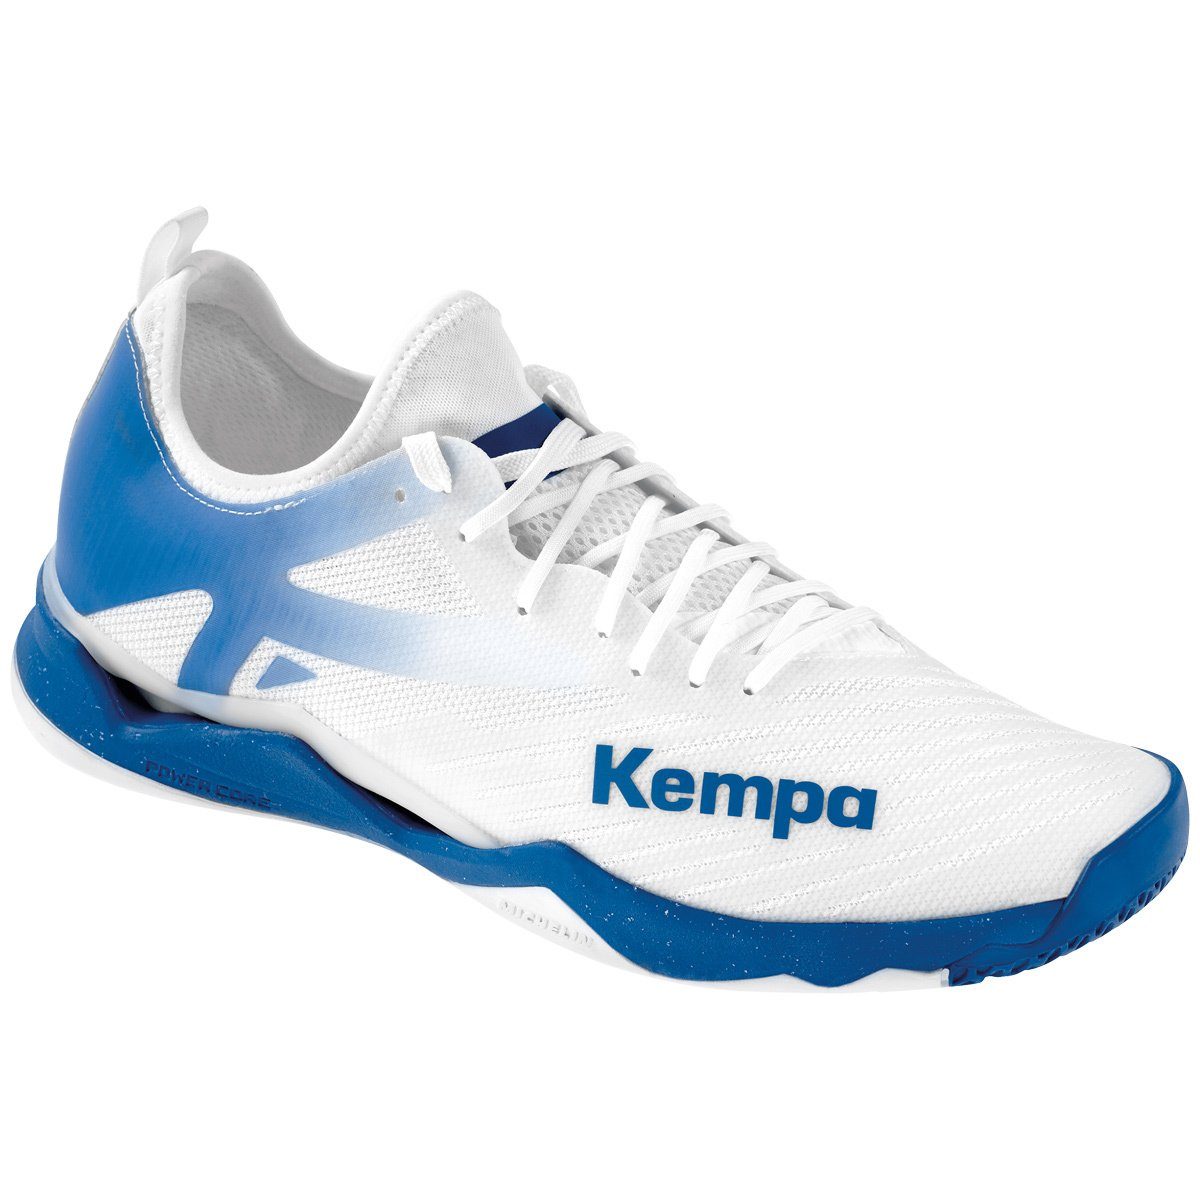 Kempa Hallen-Sport-Schuhe WING LITE 2.0 Hallenschuh